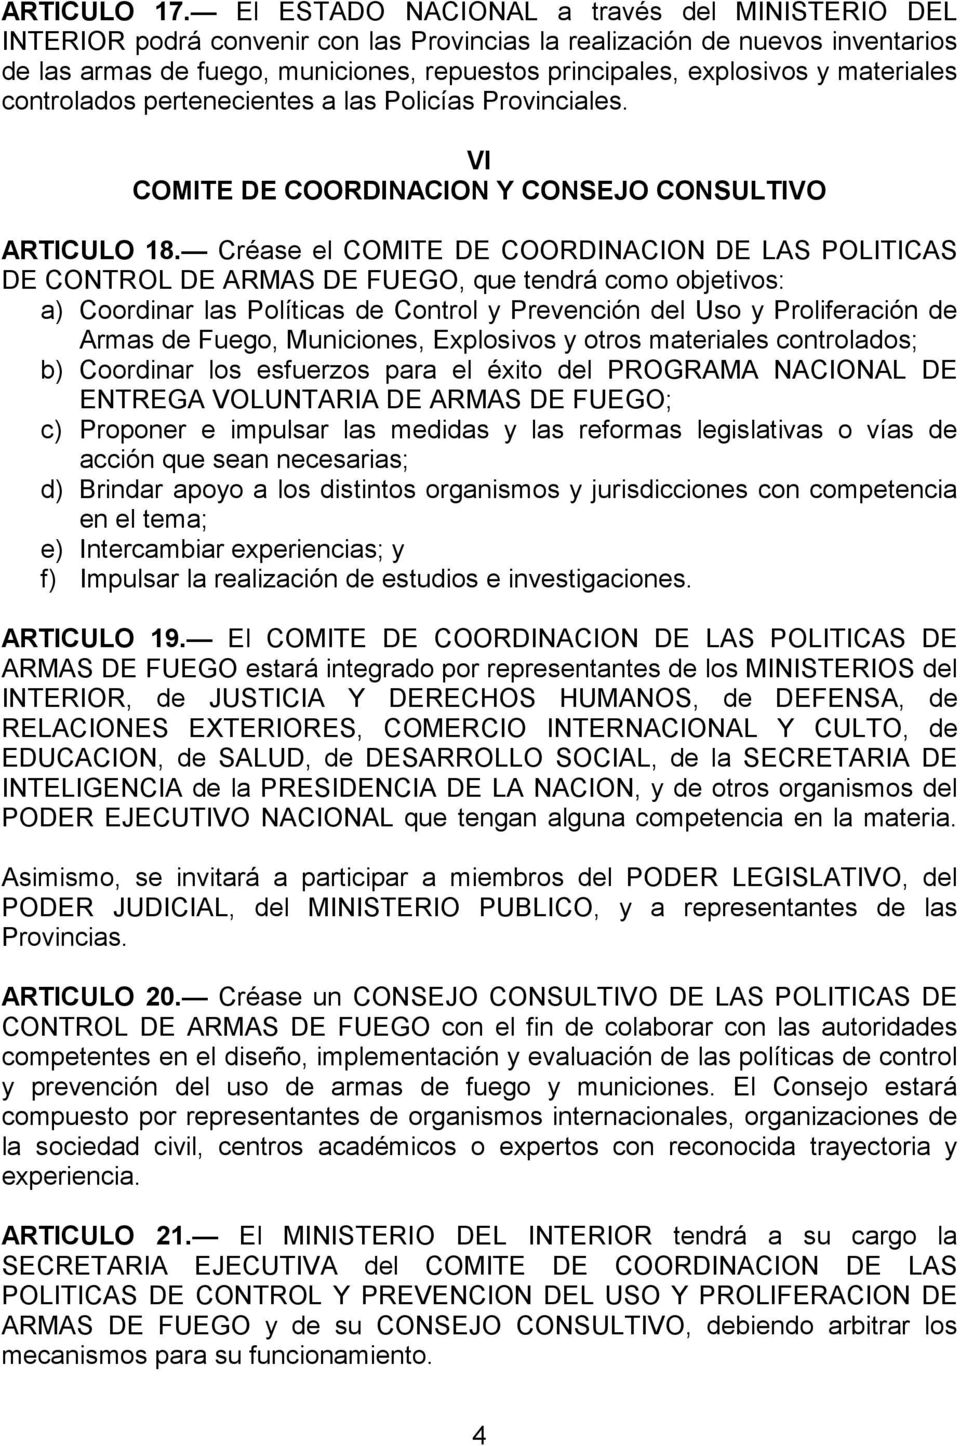 materiales controlados pertenecientes a las Policías Provinciales. VI COMITE DE COORDINACION Y CONSEJO CONSULTIVO ARTICULO 18.